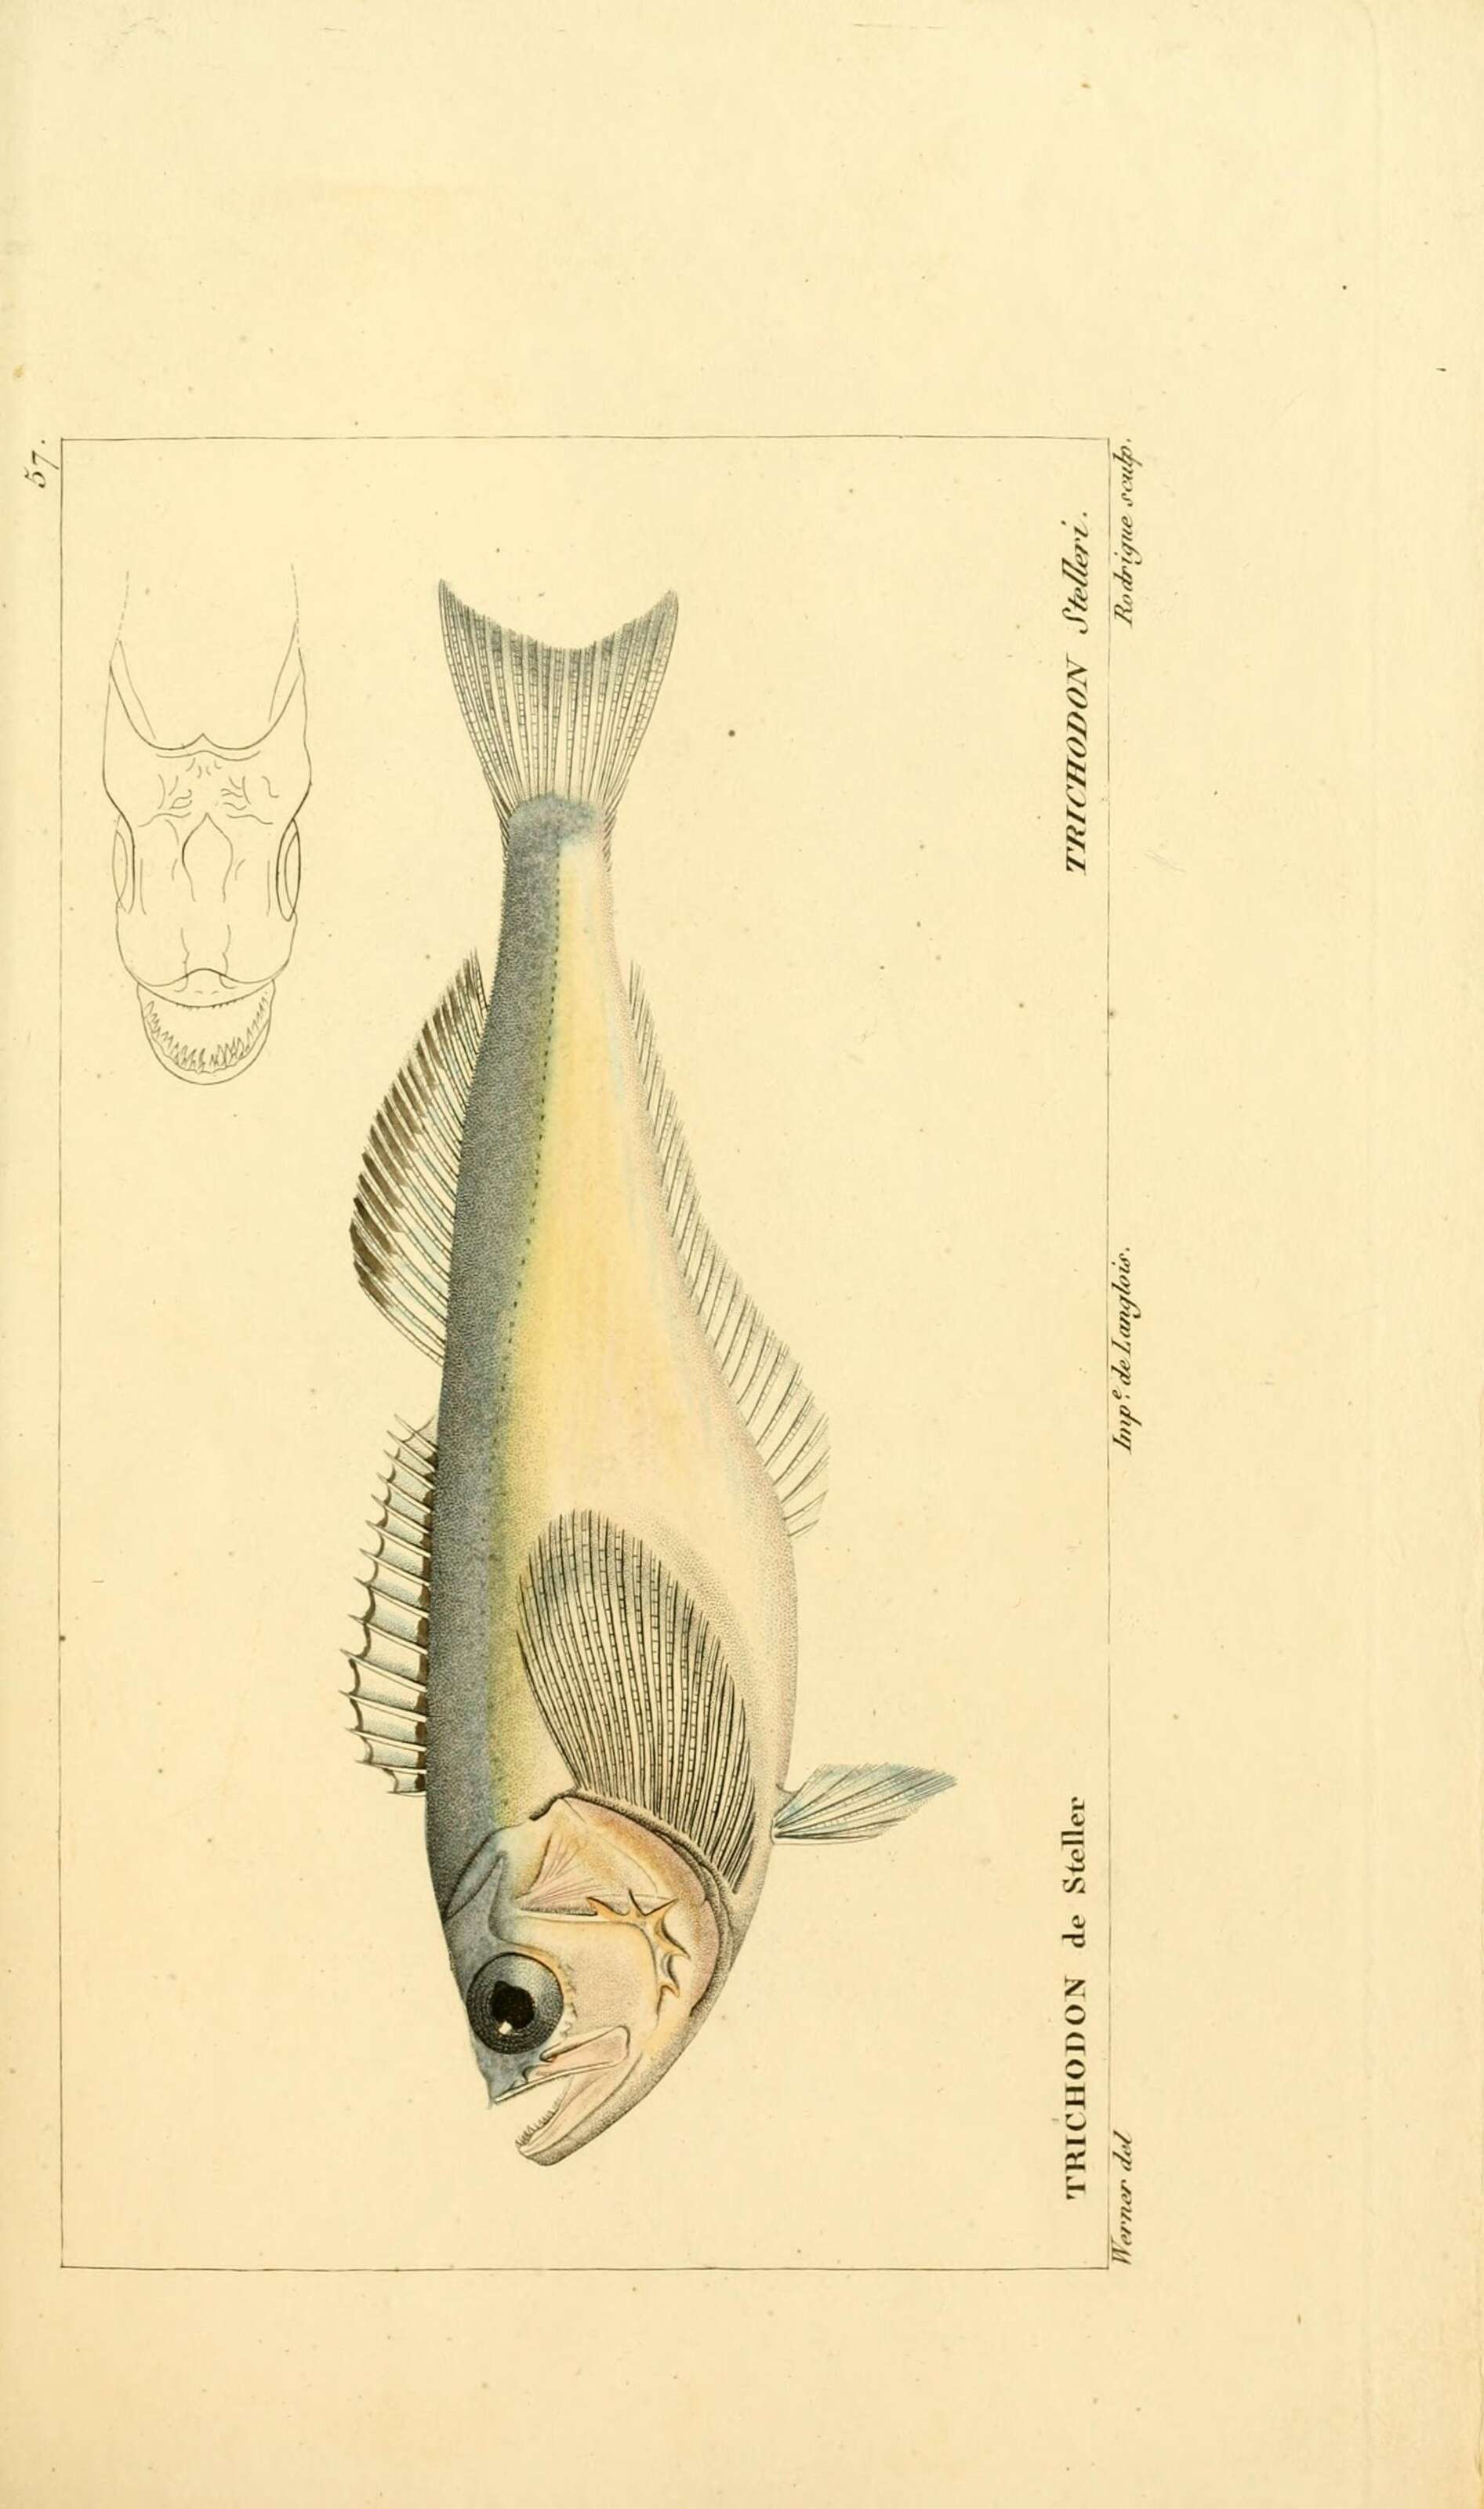 Image of sandfishes